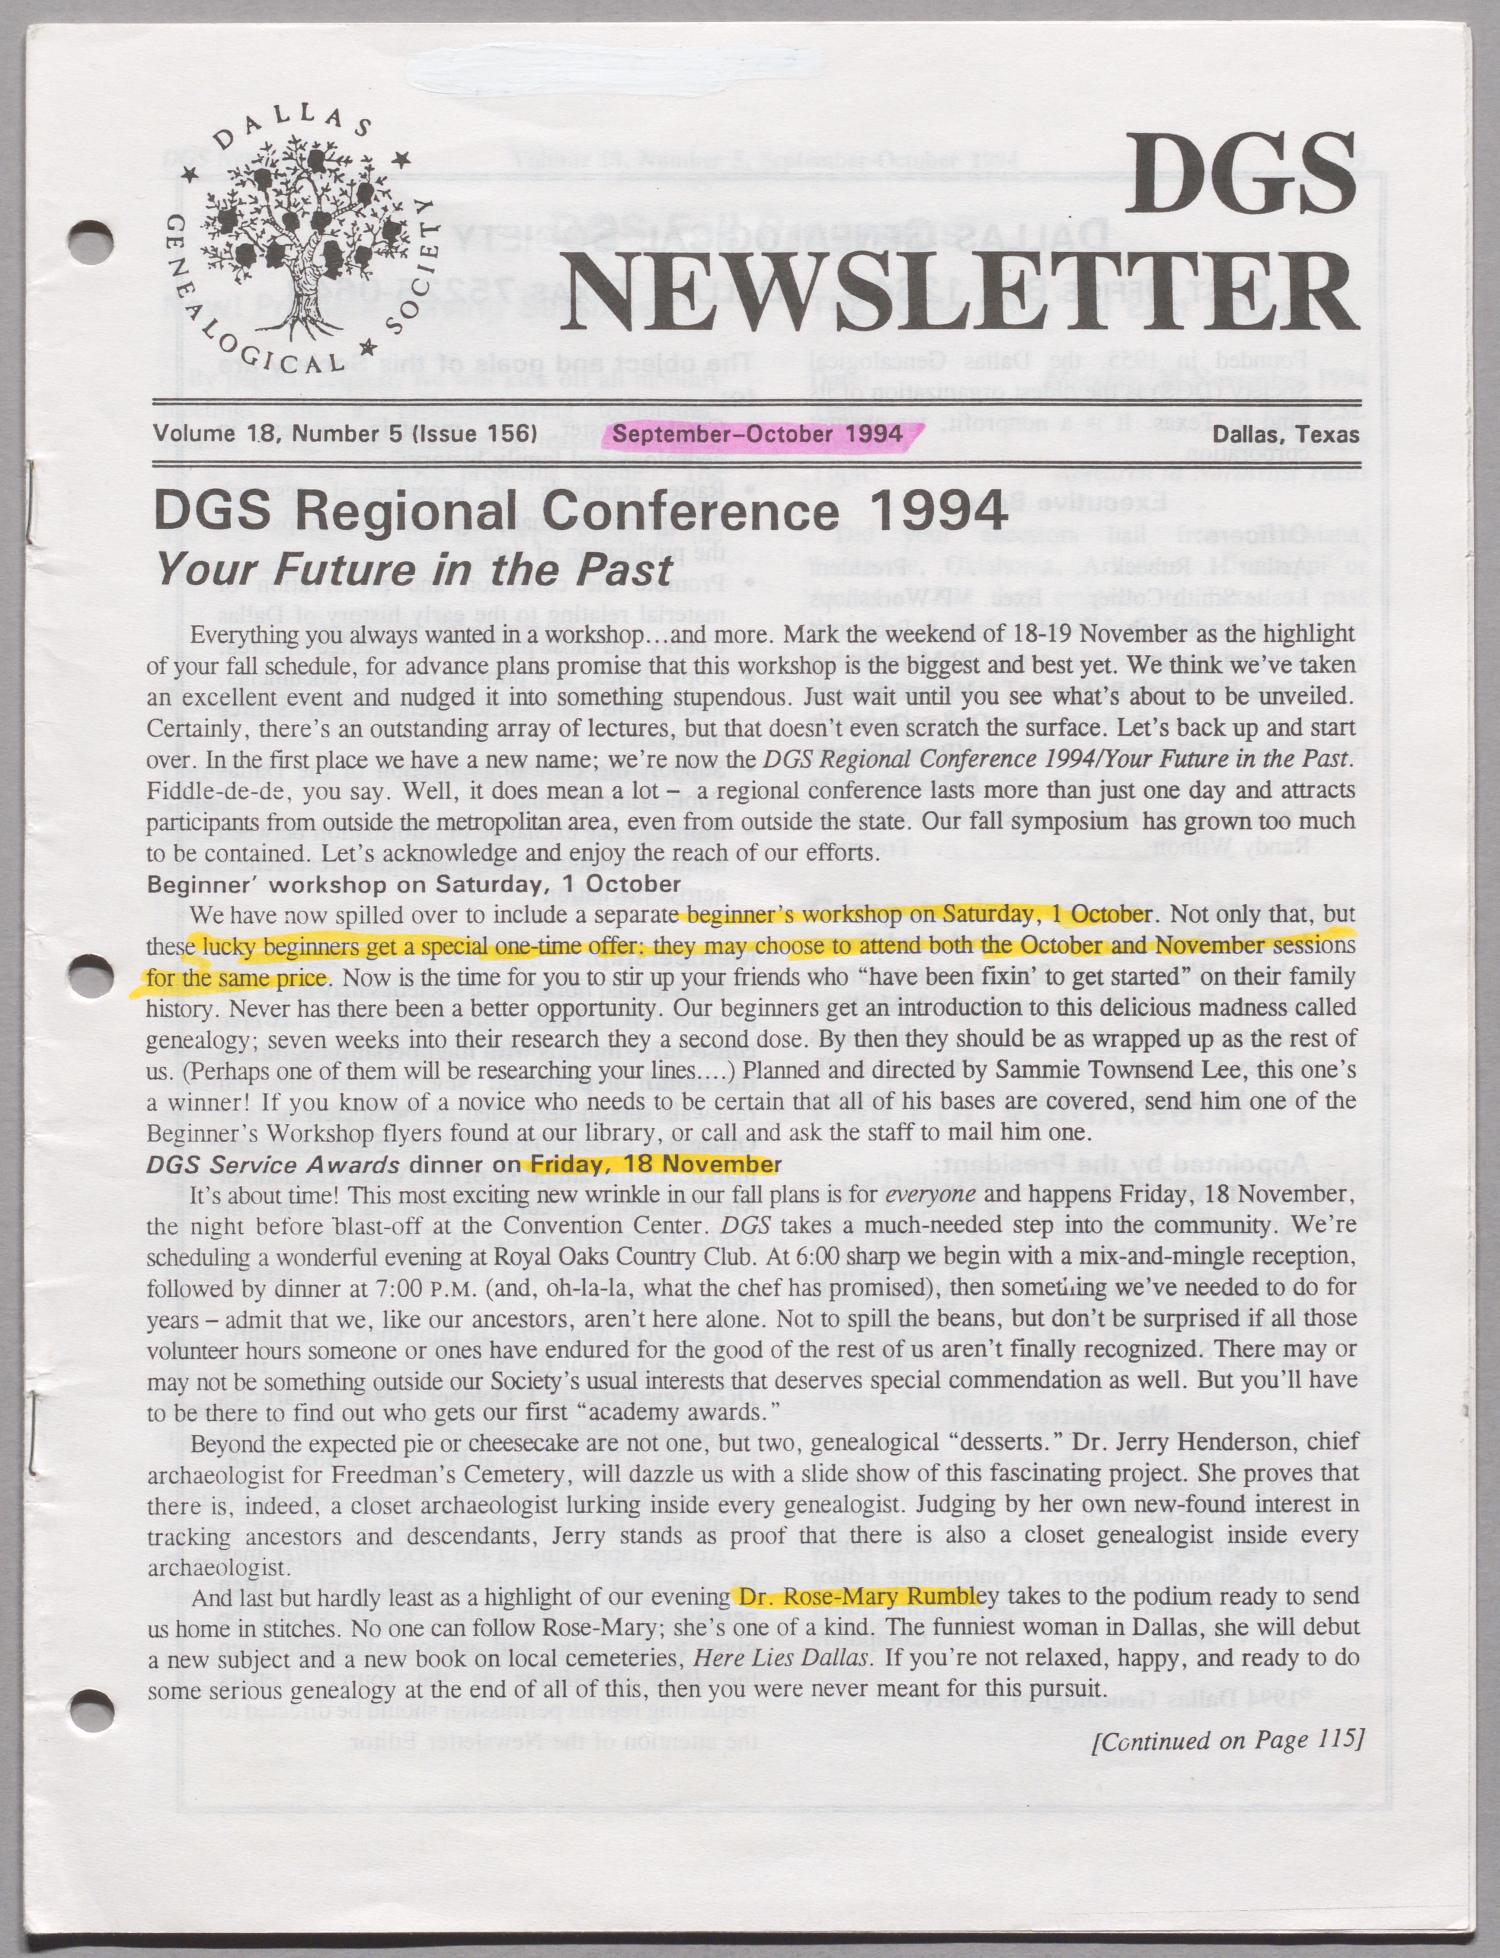 DGS Newsletter, Volume 18, Number 5, September-October 1994
                                                
                                                    97
                                                